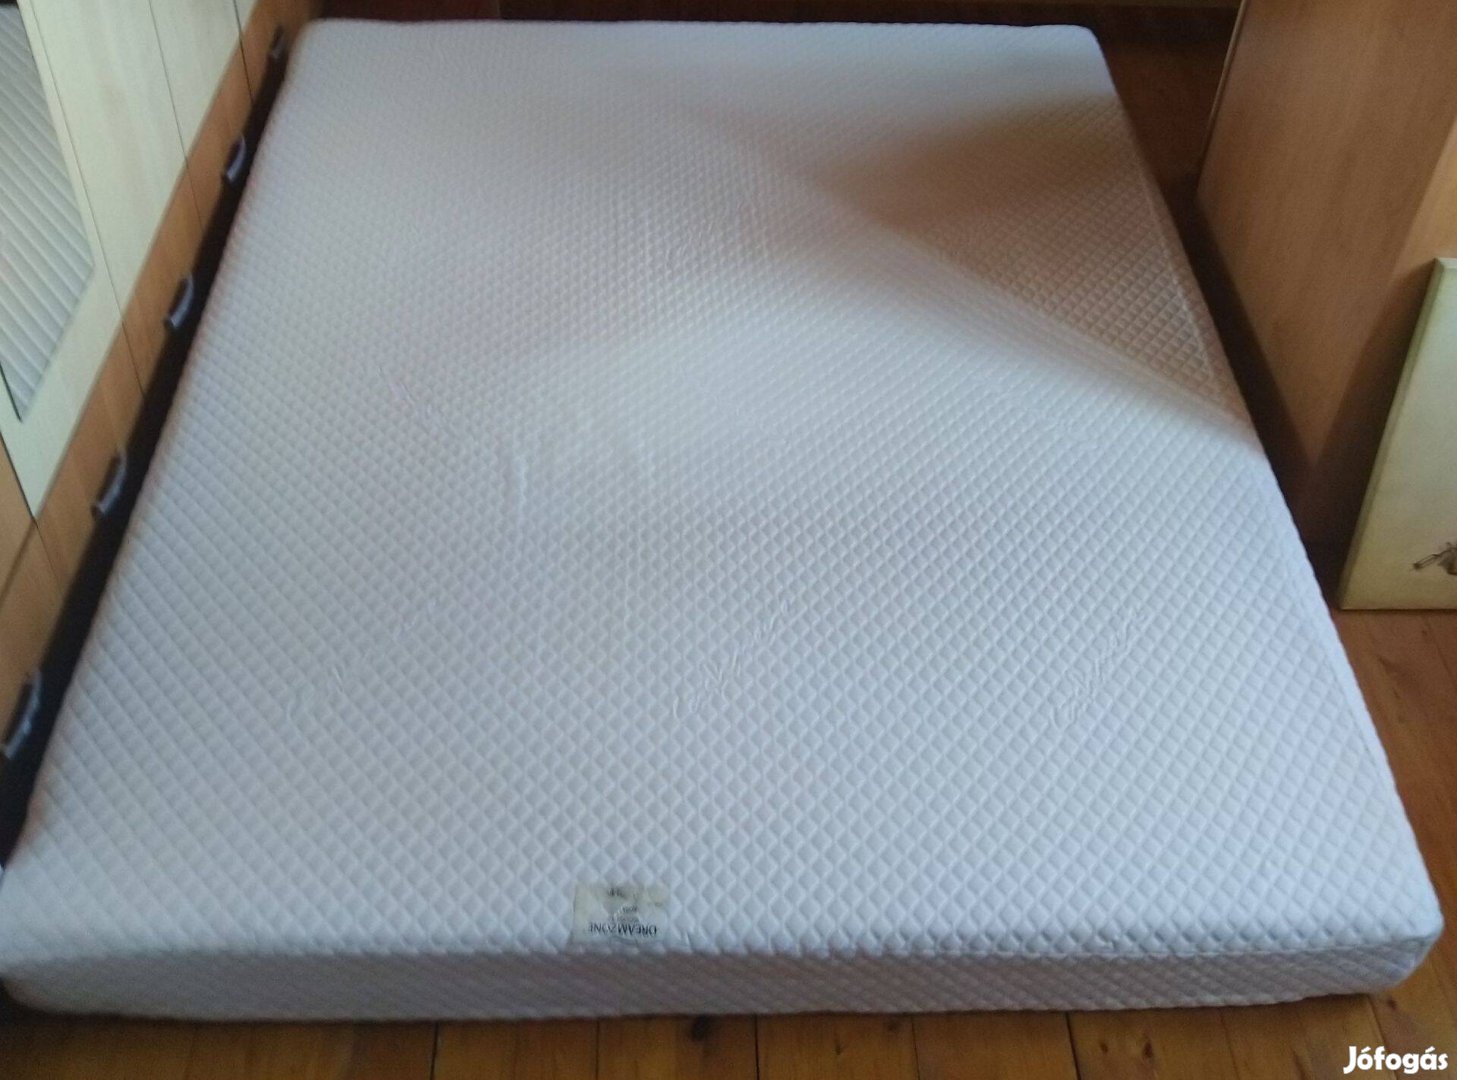 Eger eladó keveset használt habszivacs matrac